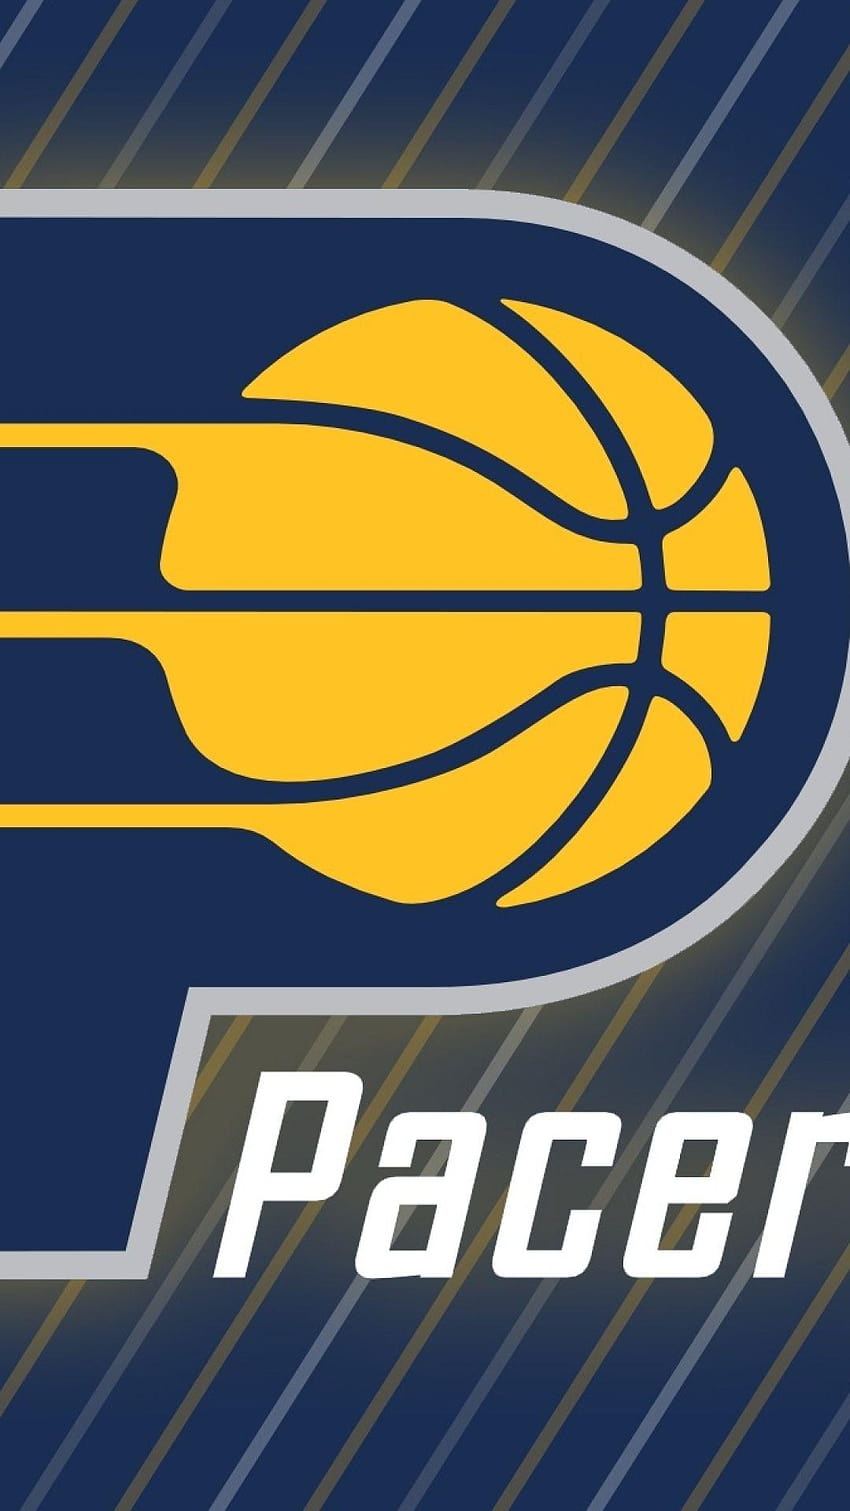 Logo Pacers wysłane przez Sarah Tremblay, logo Indiana Pacers Tapeta na telefon HD